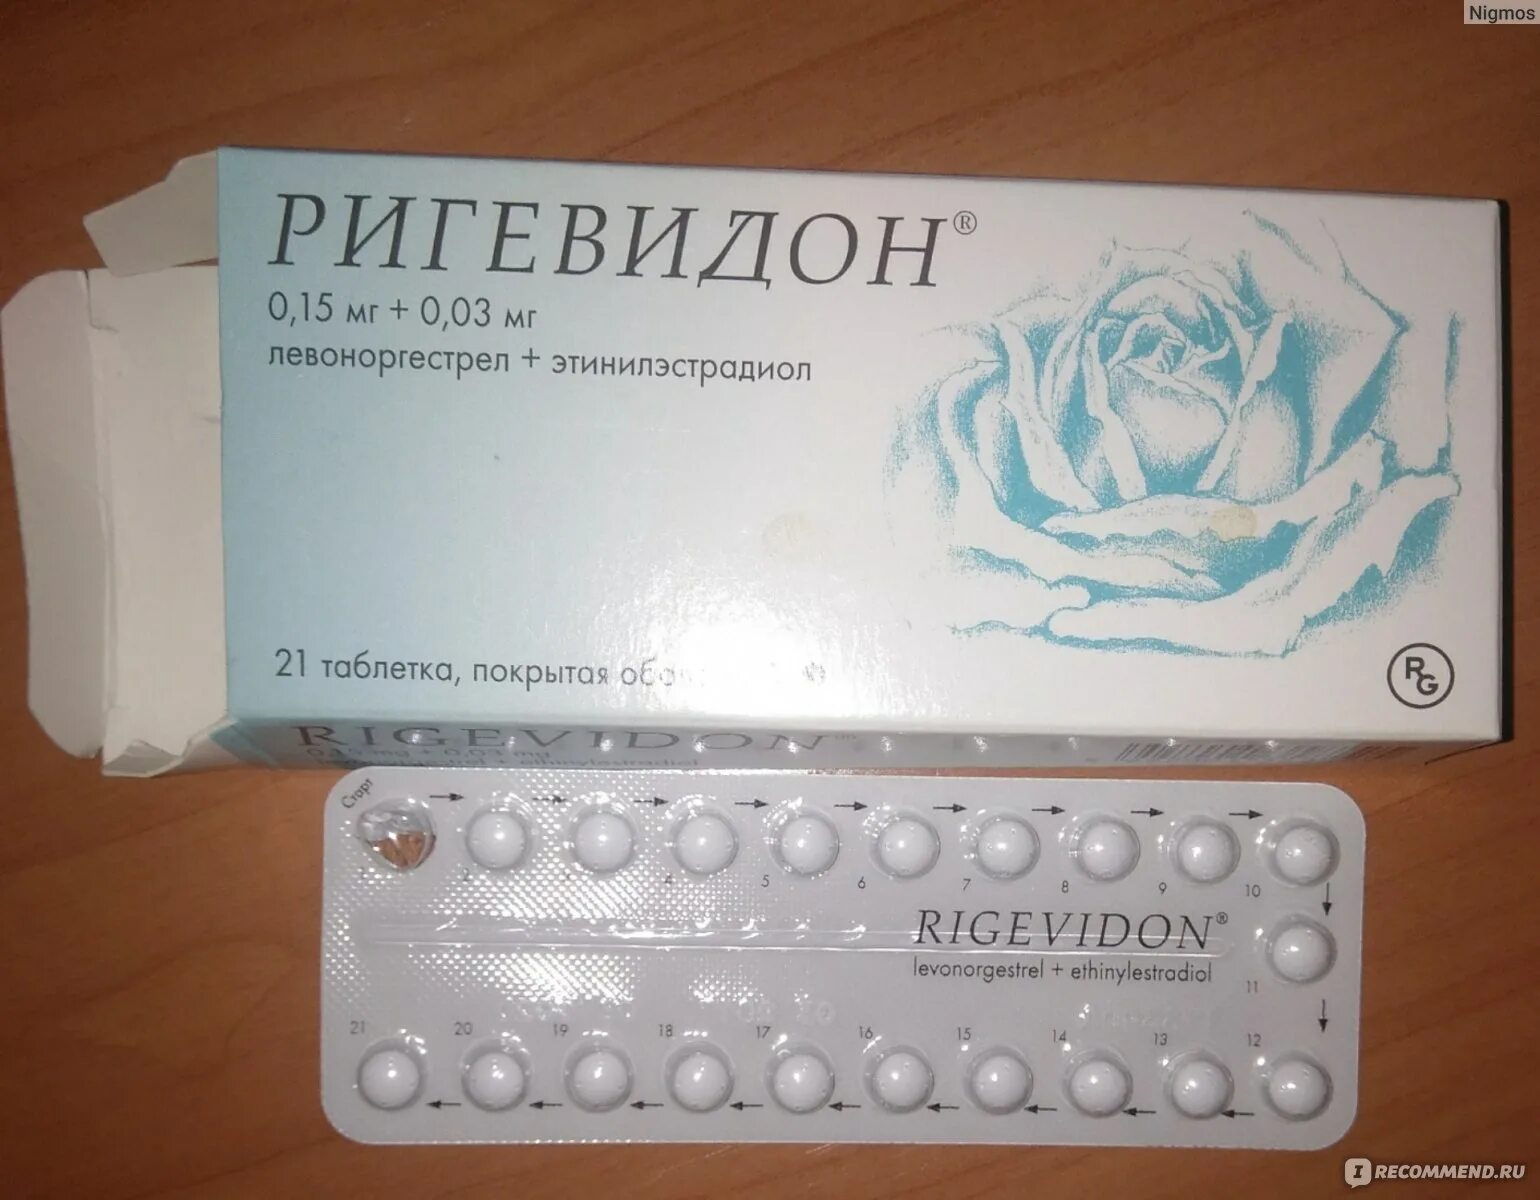 Противозачаточные таблетки ригевидон. Гормональный препарат ригевидон. Противозачаточные таблетки для женщин ригевидон. Таблетки противозачаточные реговидон. Таблетки против беременности после